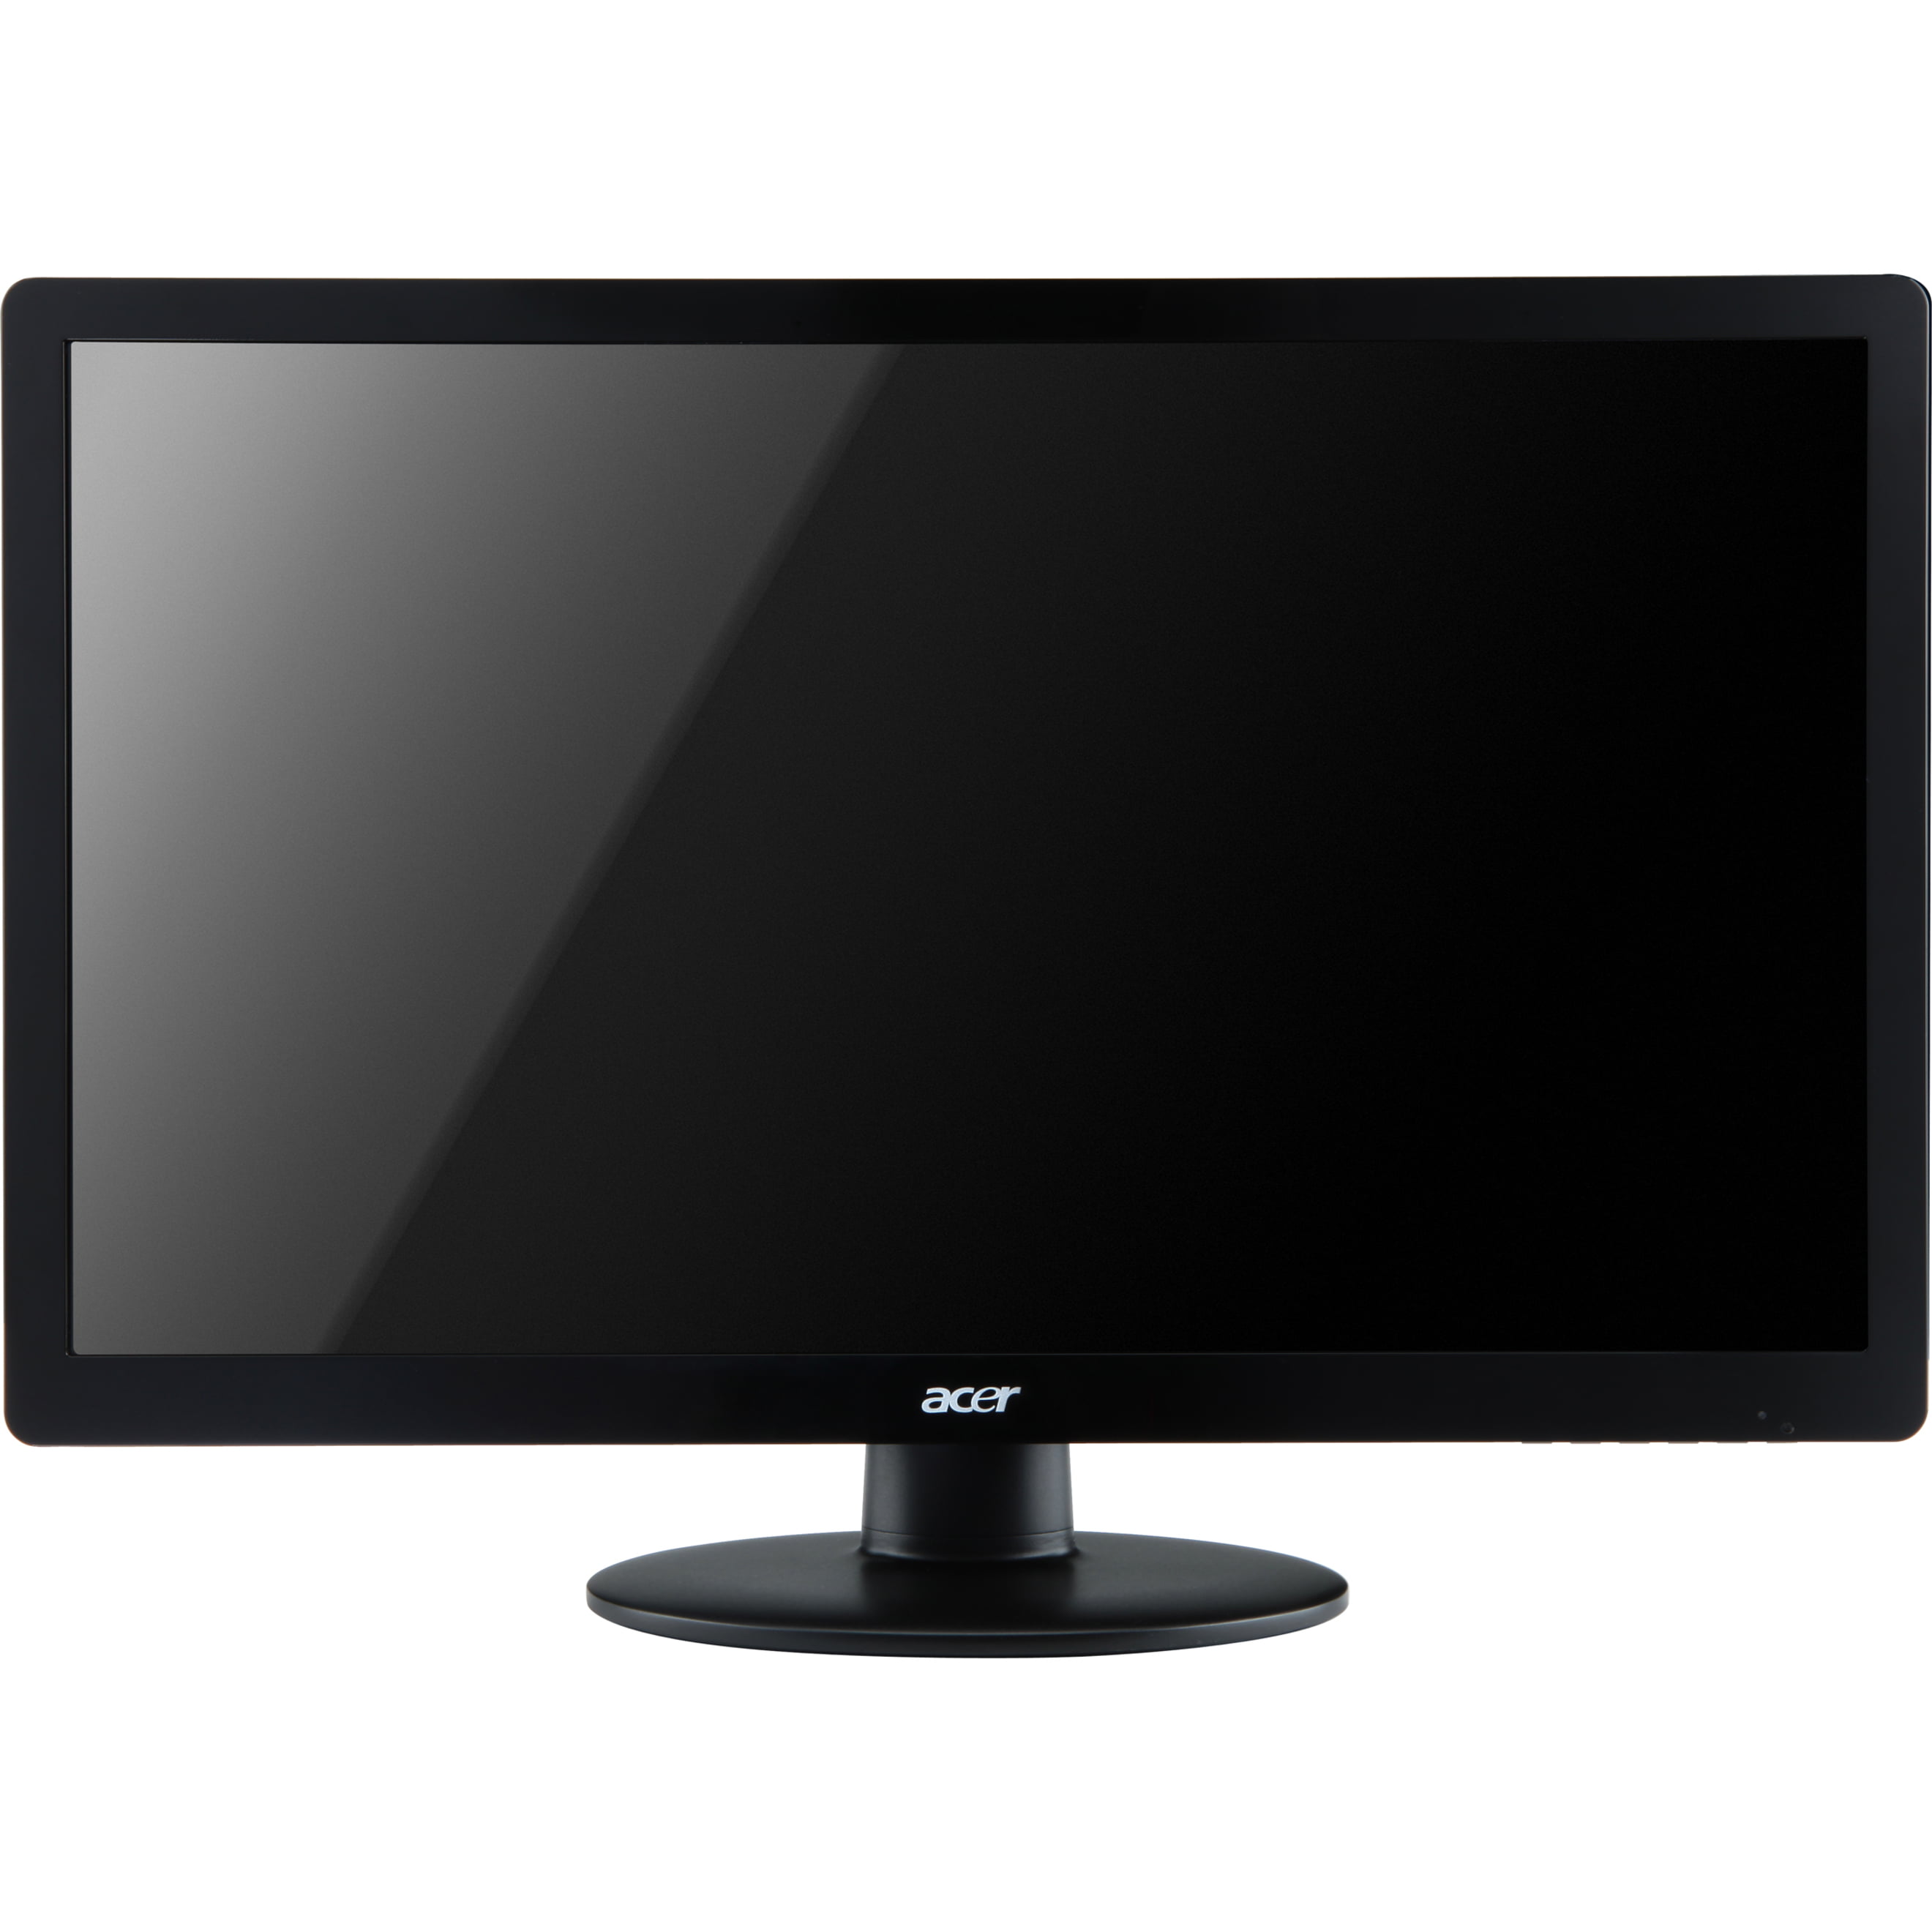 Acer S230HLAbd 23" Full LED LCD Monitor, 16:9, Black - Walmart.com